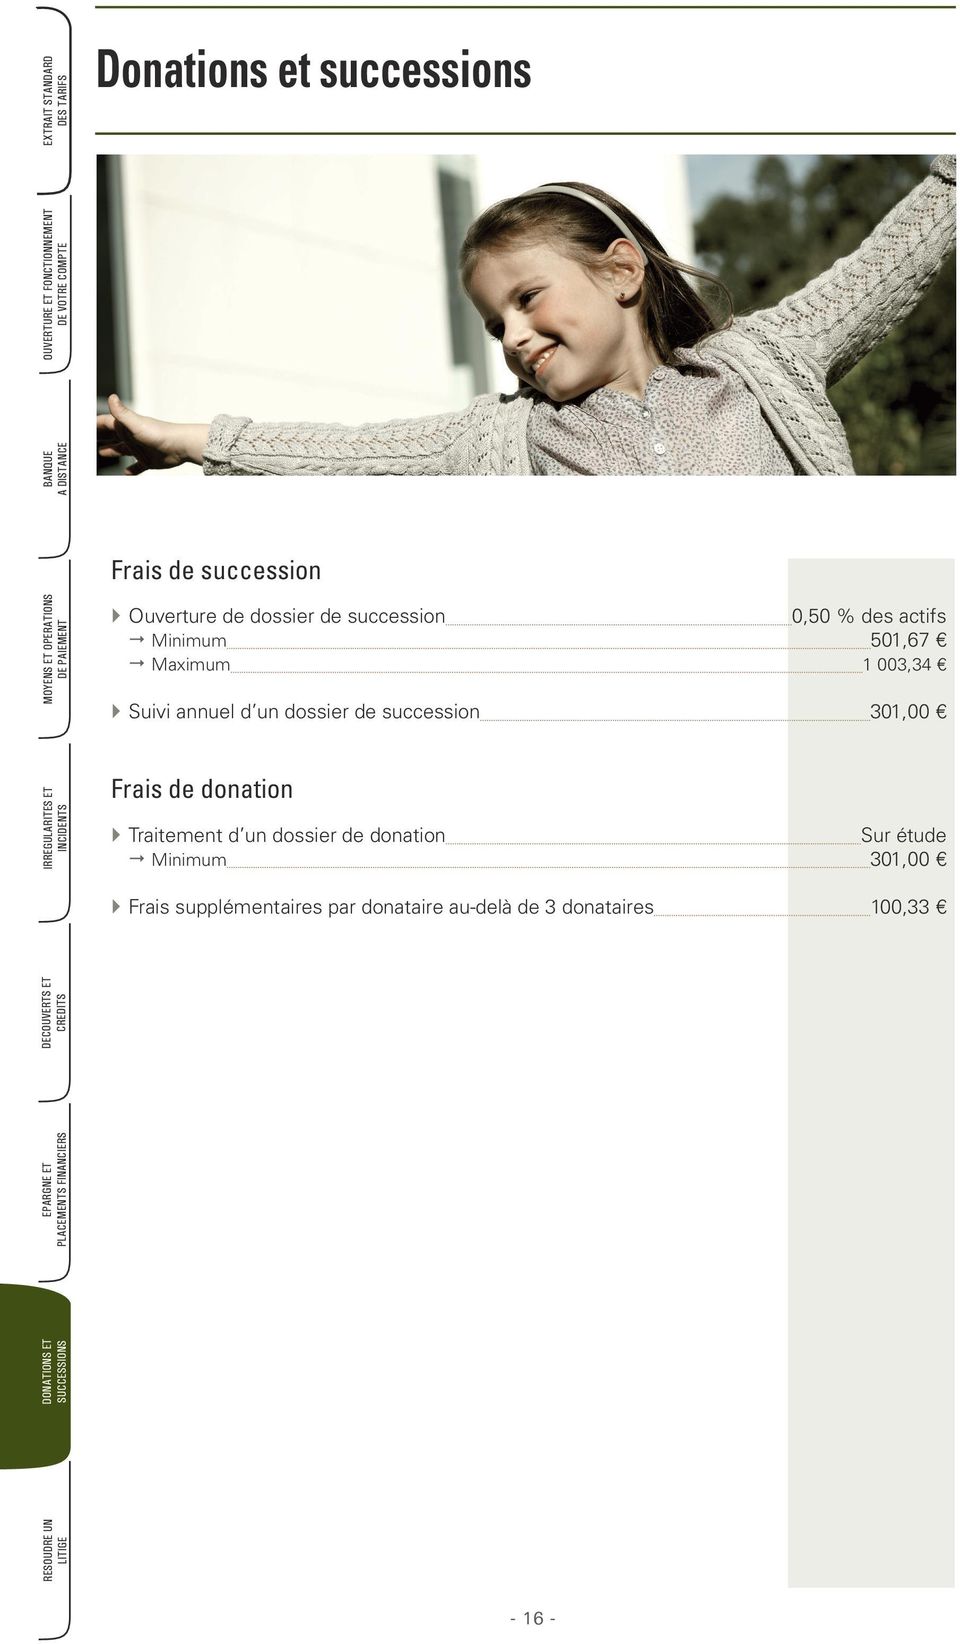 un dossier de succession 301,00 Frais de donation Traitement d un dossier de donation Sur